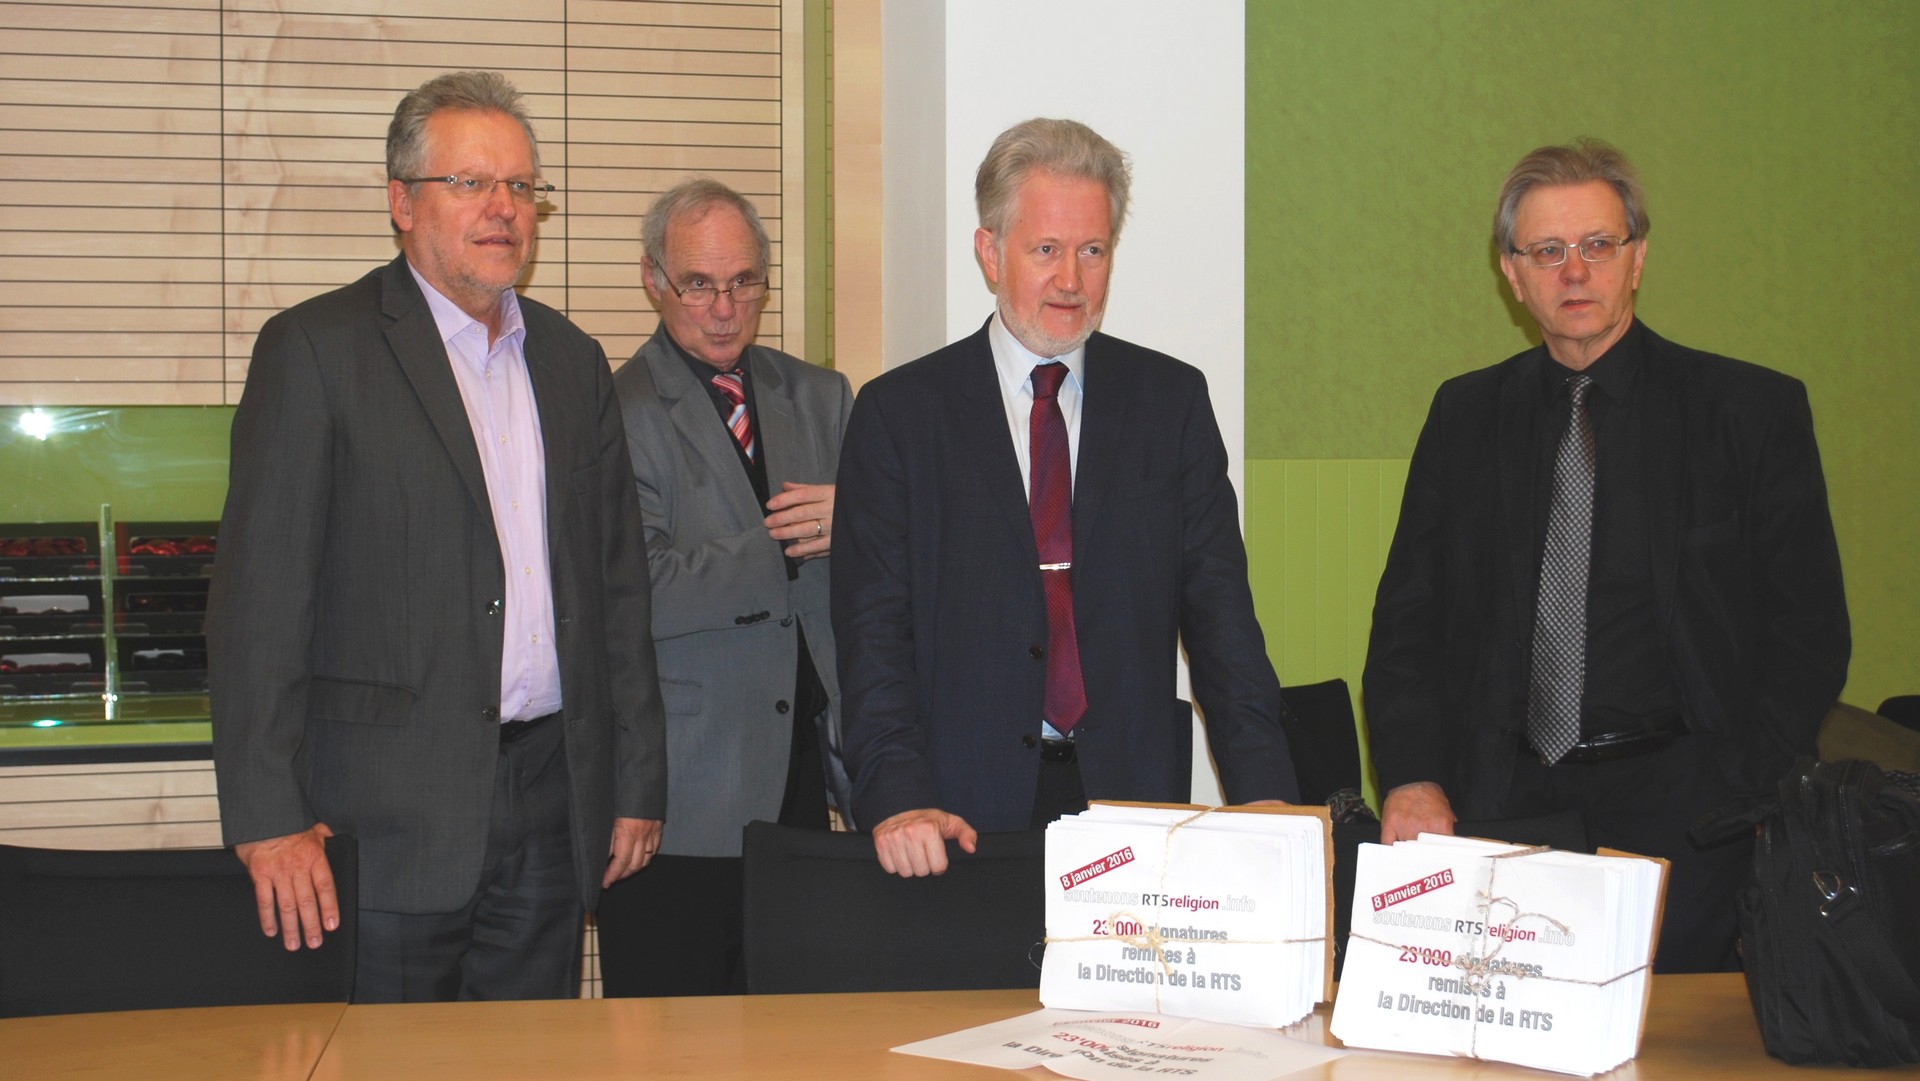 Remise de la pétition "Soutenons RTSreligion", de gauche à droite: Jacques-André Maire, André Kolly, Jean-François Mayer, Claude Ruey (photo Joël Burri Protestinfo) 